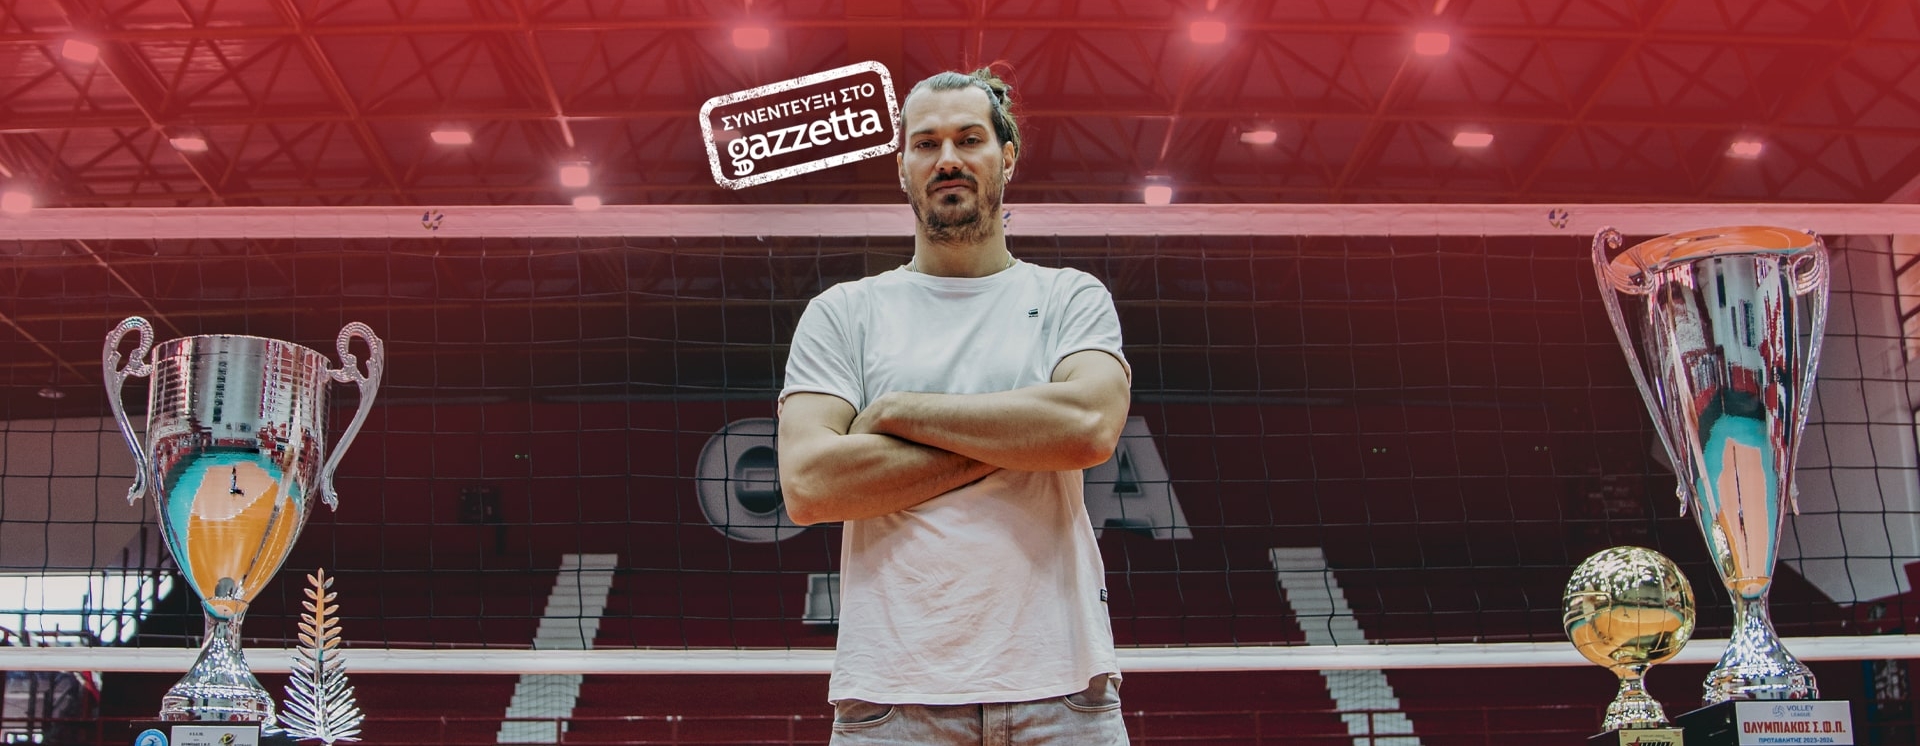 Τζούριτς στο Gazzetta: «Ήταν μια φανταστική χρονιά, στον Ολυμπιακό νιώθω σαν στο σπίτι μου»